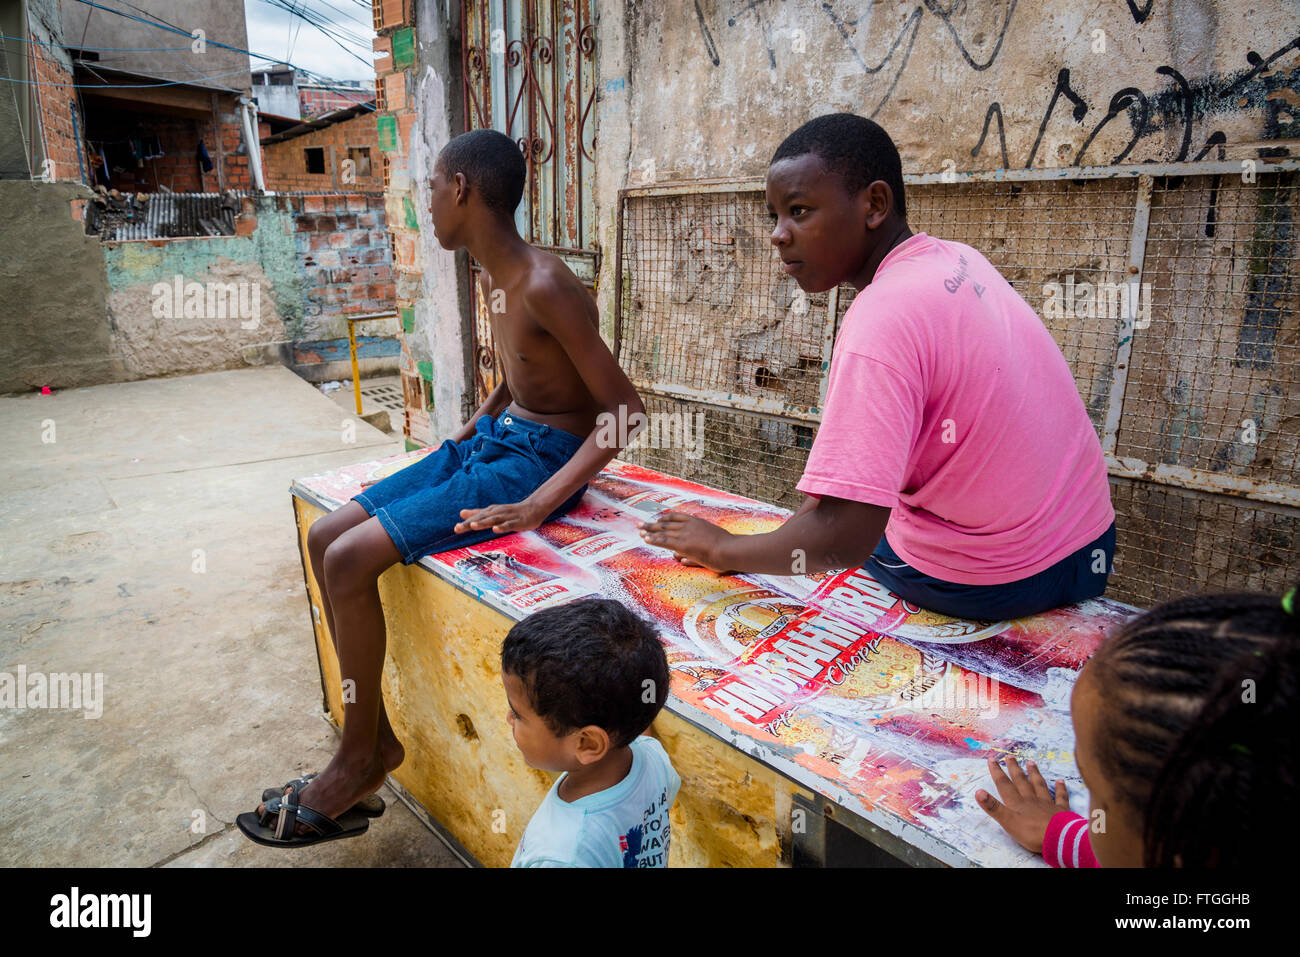 Boys Hanging Around Gentois Community Bairro Da Federa O Salvador Bahia Brazil Stock Photo